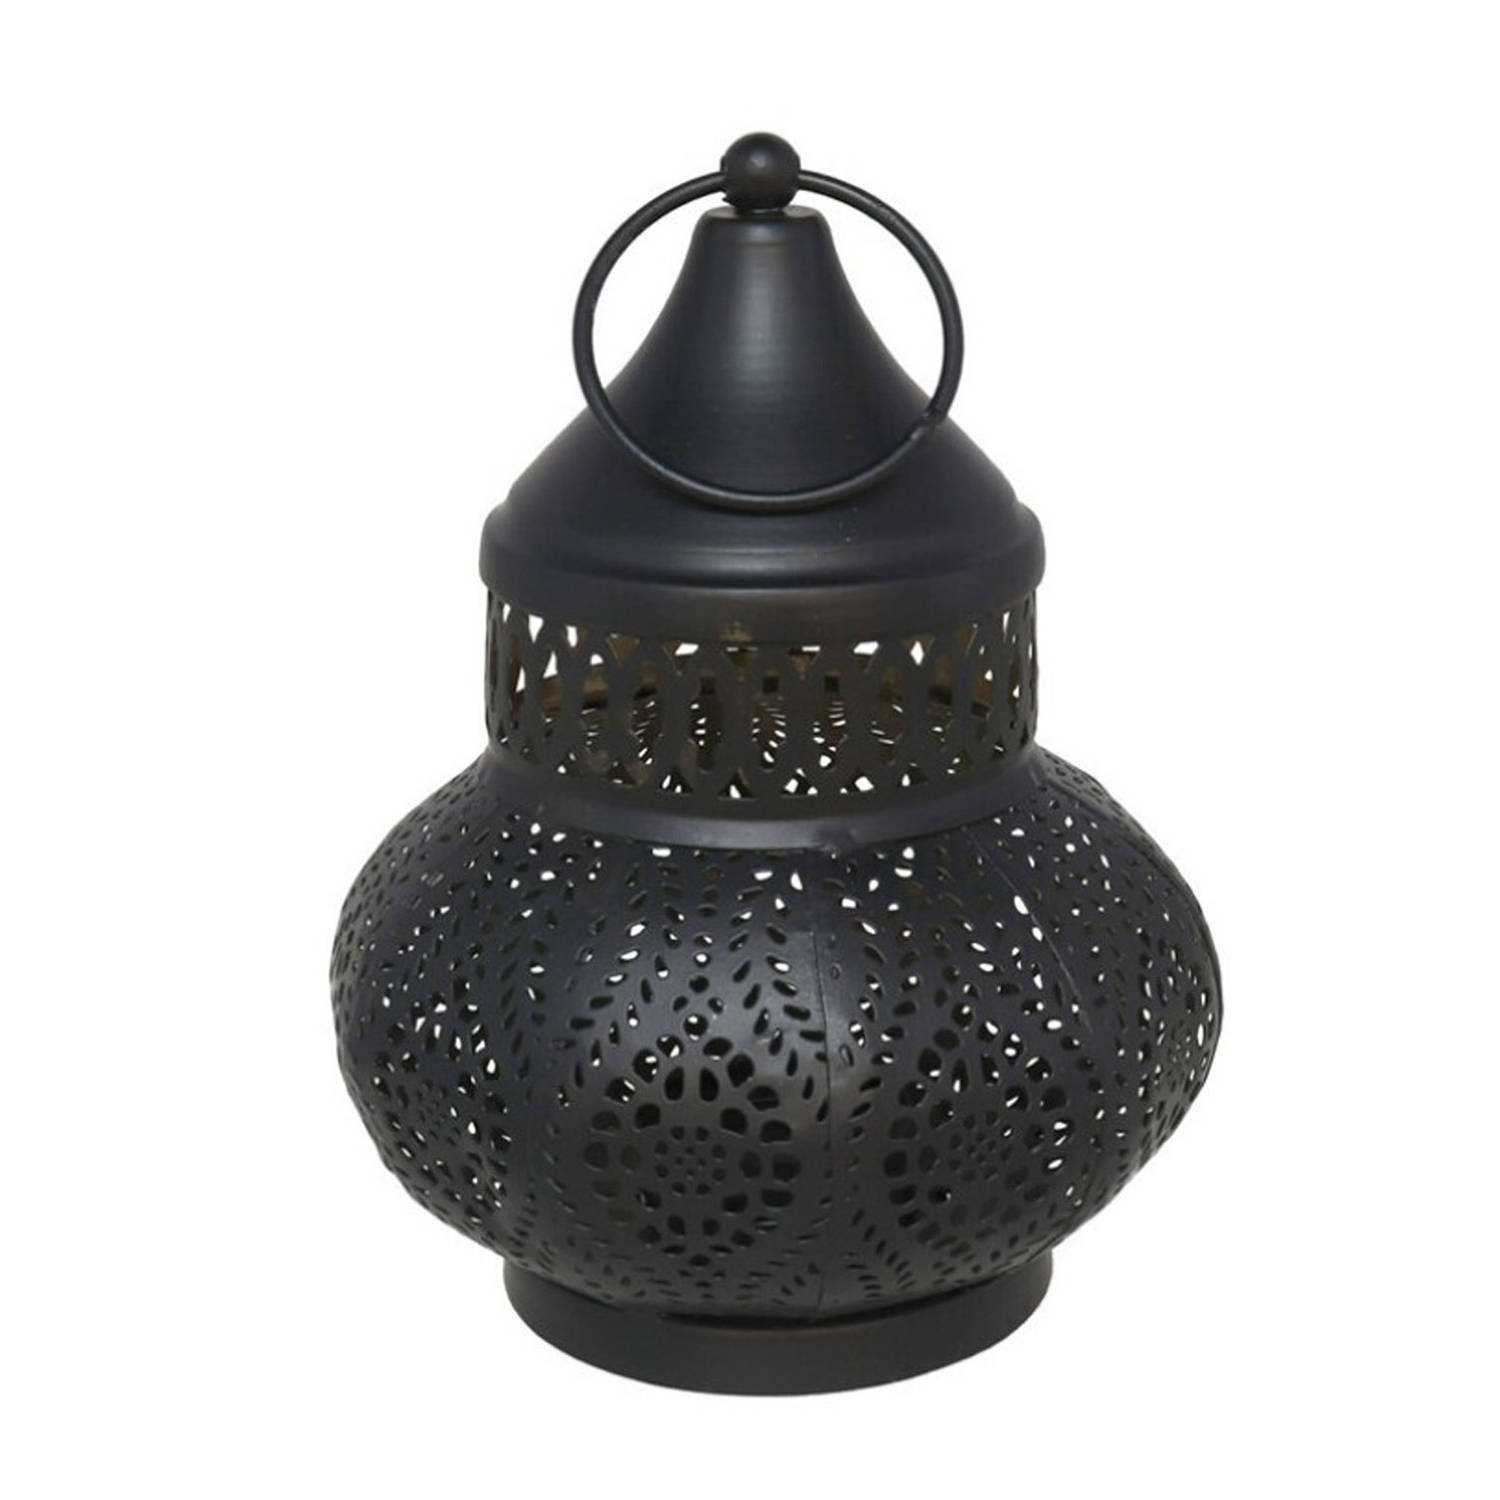 Tuin deco lantaarn - Marokkaanse sfeer stijl - zwart/goud - D12 x H16 cm - metaal - buitenverlichting - buitenverli